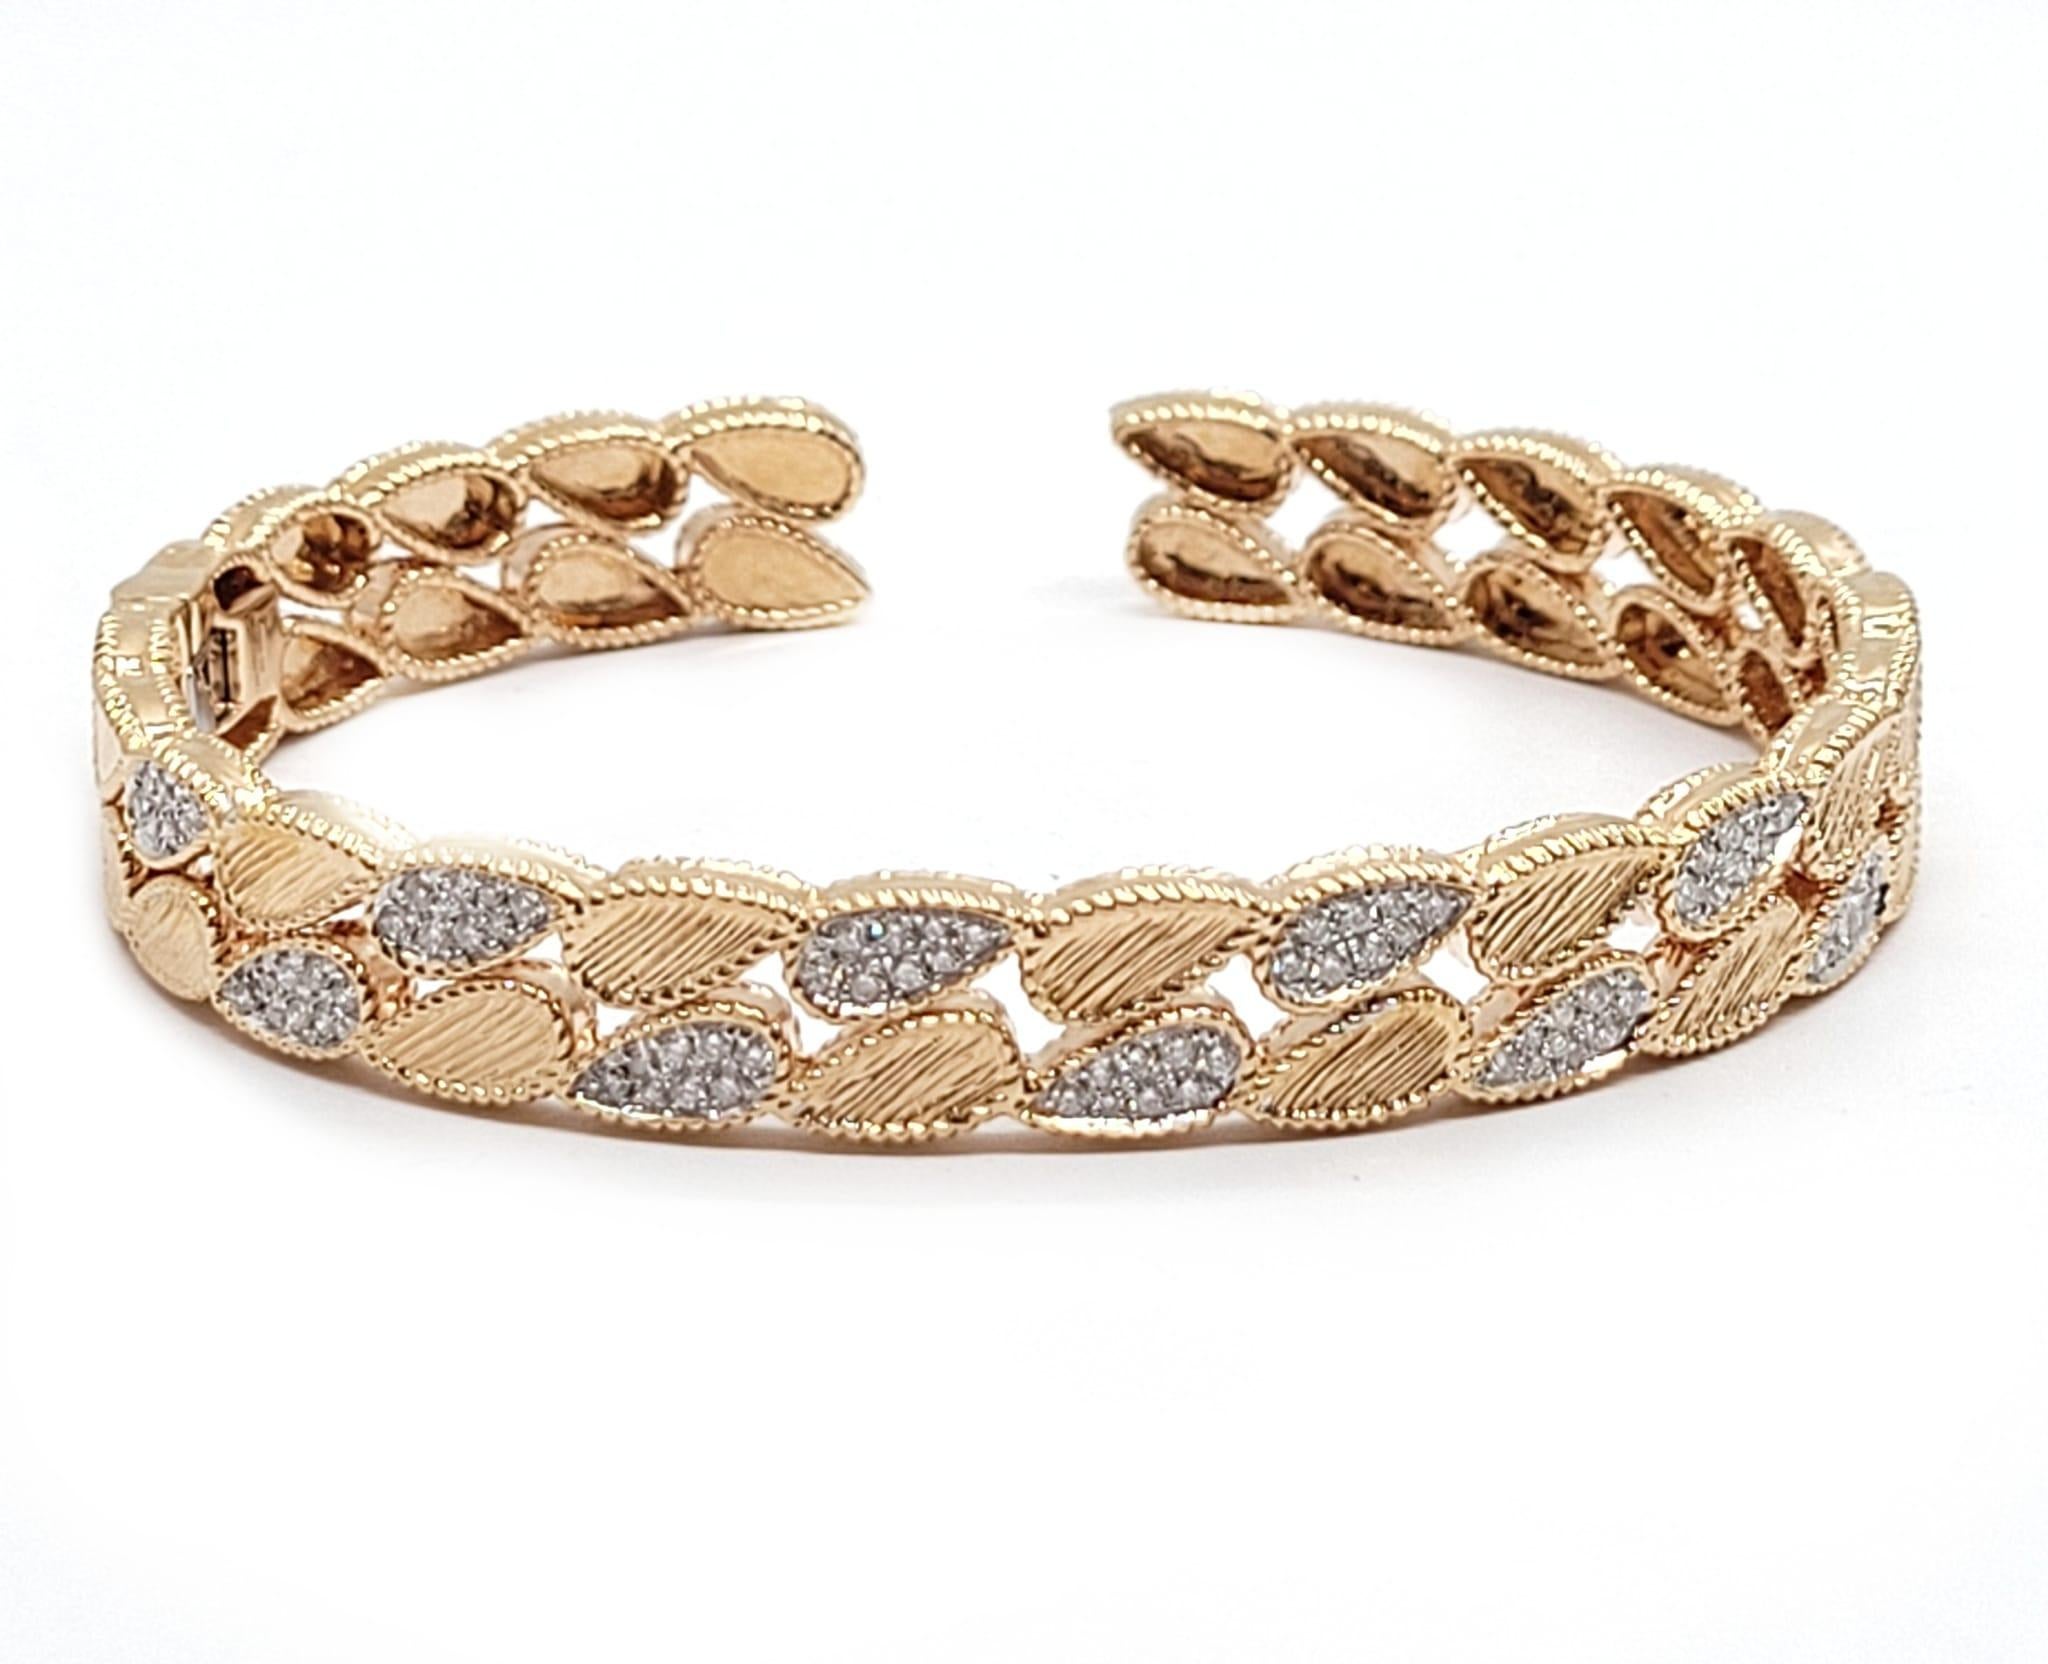 Andreoli Armband aus 18 Karat Roségold mit 1,65 Karat Diamanten

Dieses Armband hat folgende Eigenschaften:
- 1,65 Karat Diamant
- 25,33 Gramm 18K Rose Gold
- Hergestellt in Italien